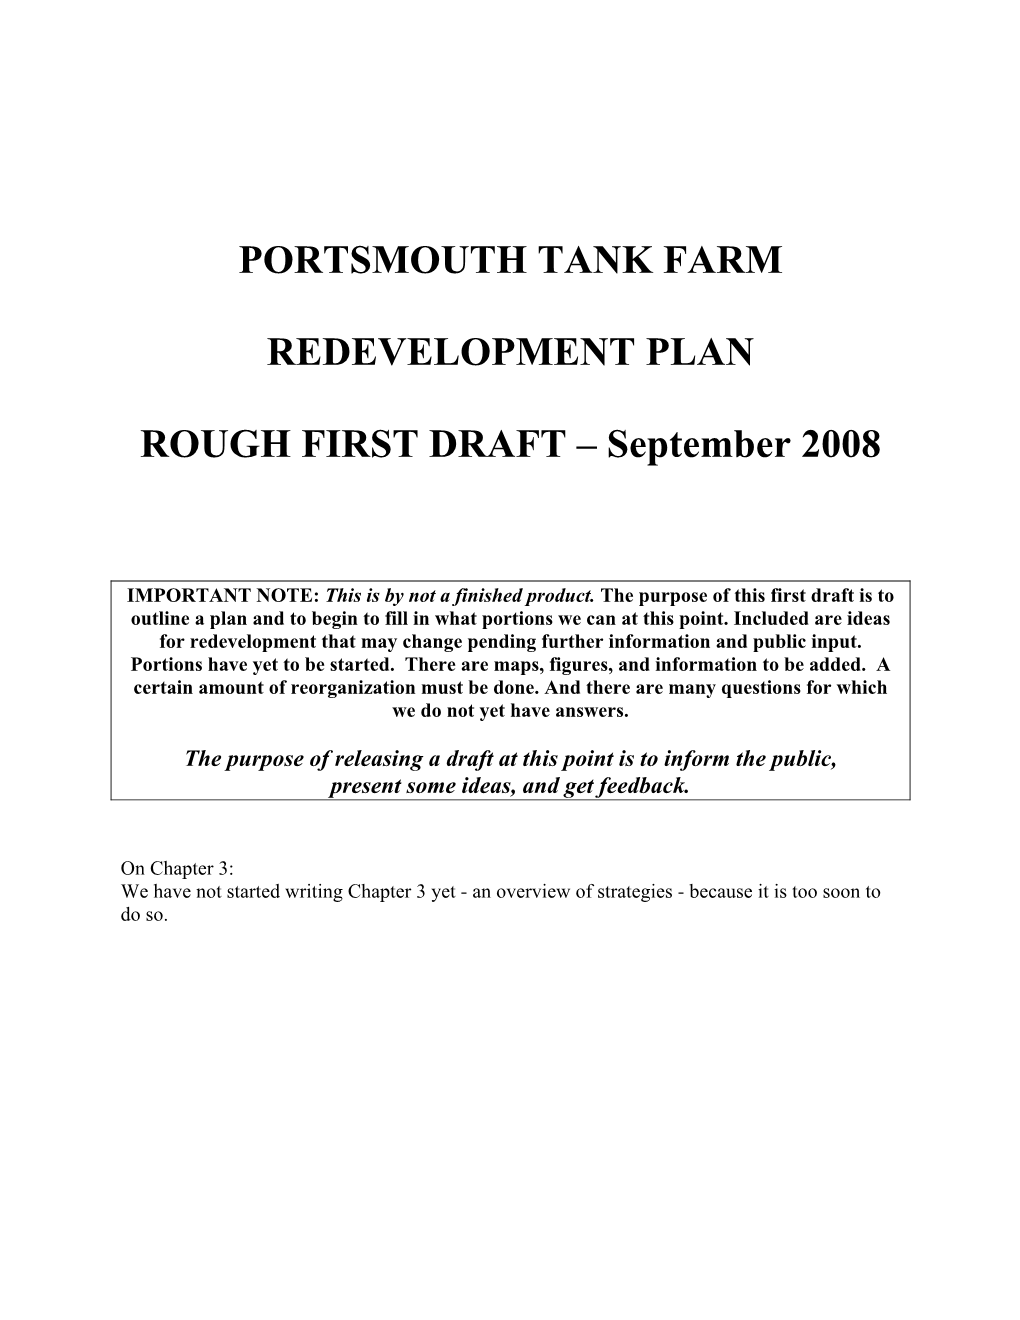 Portsmouth Tank Farm Redevelopment Plan